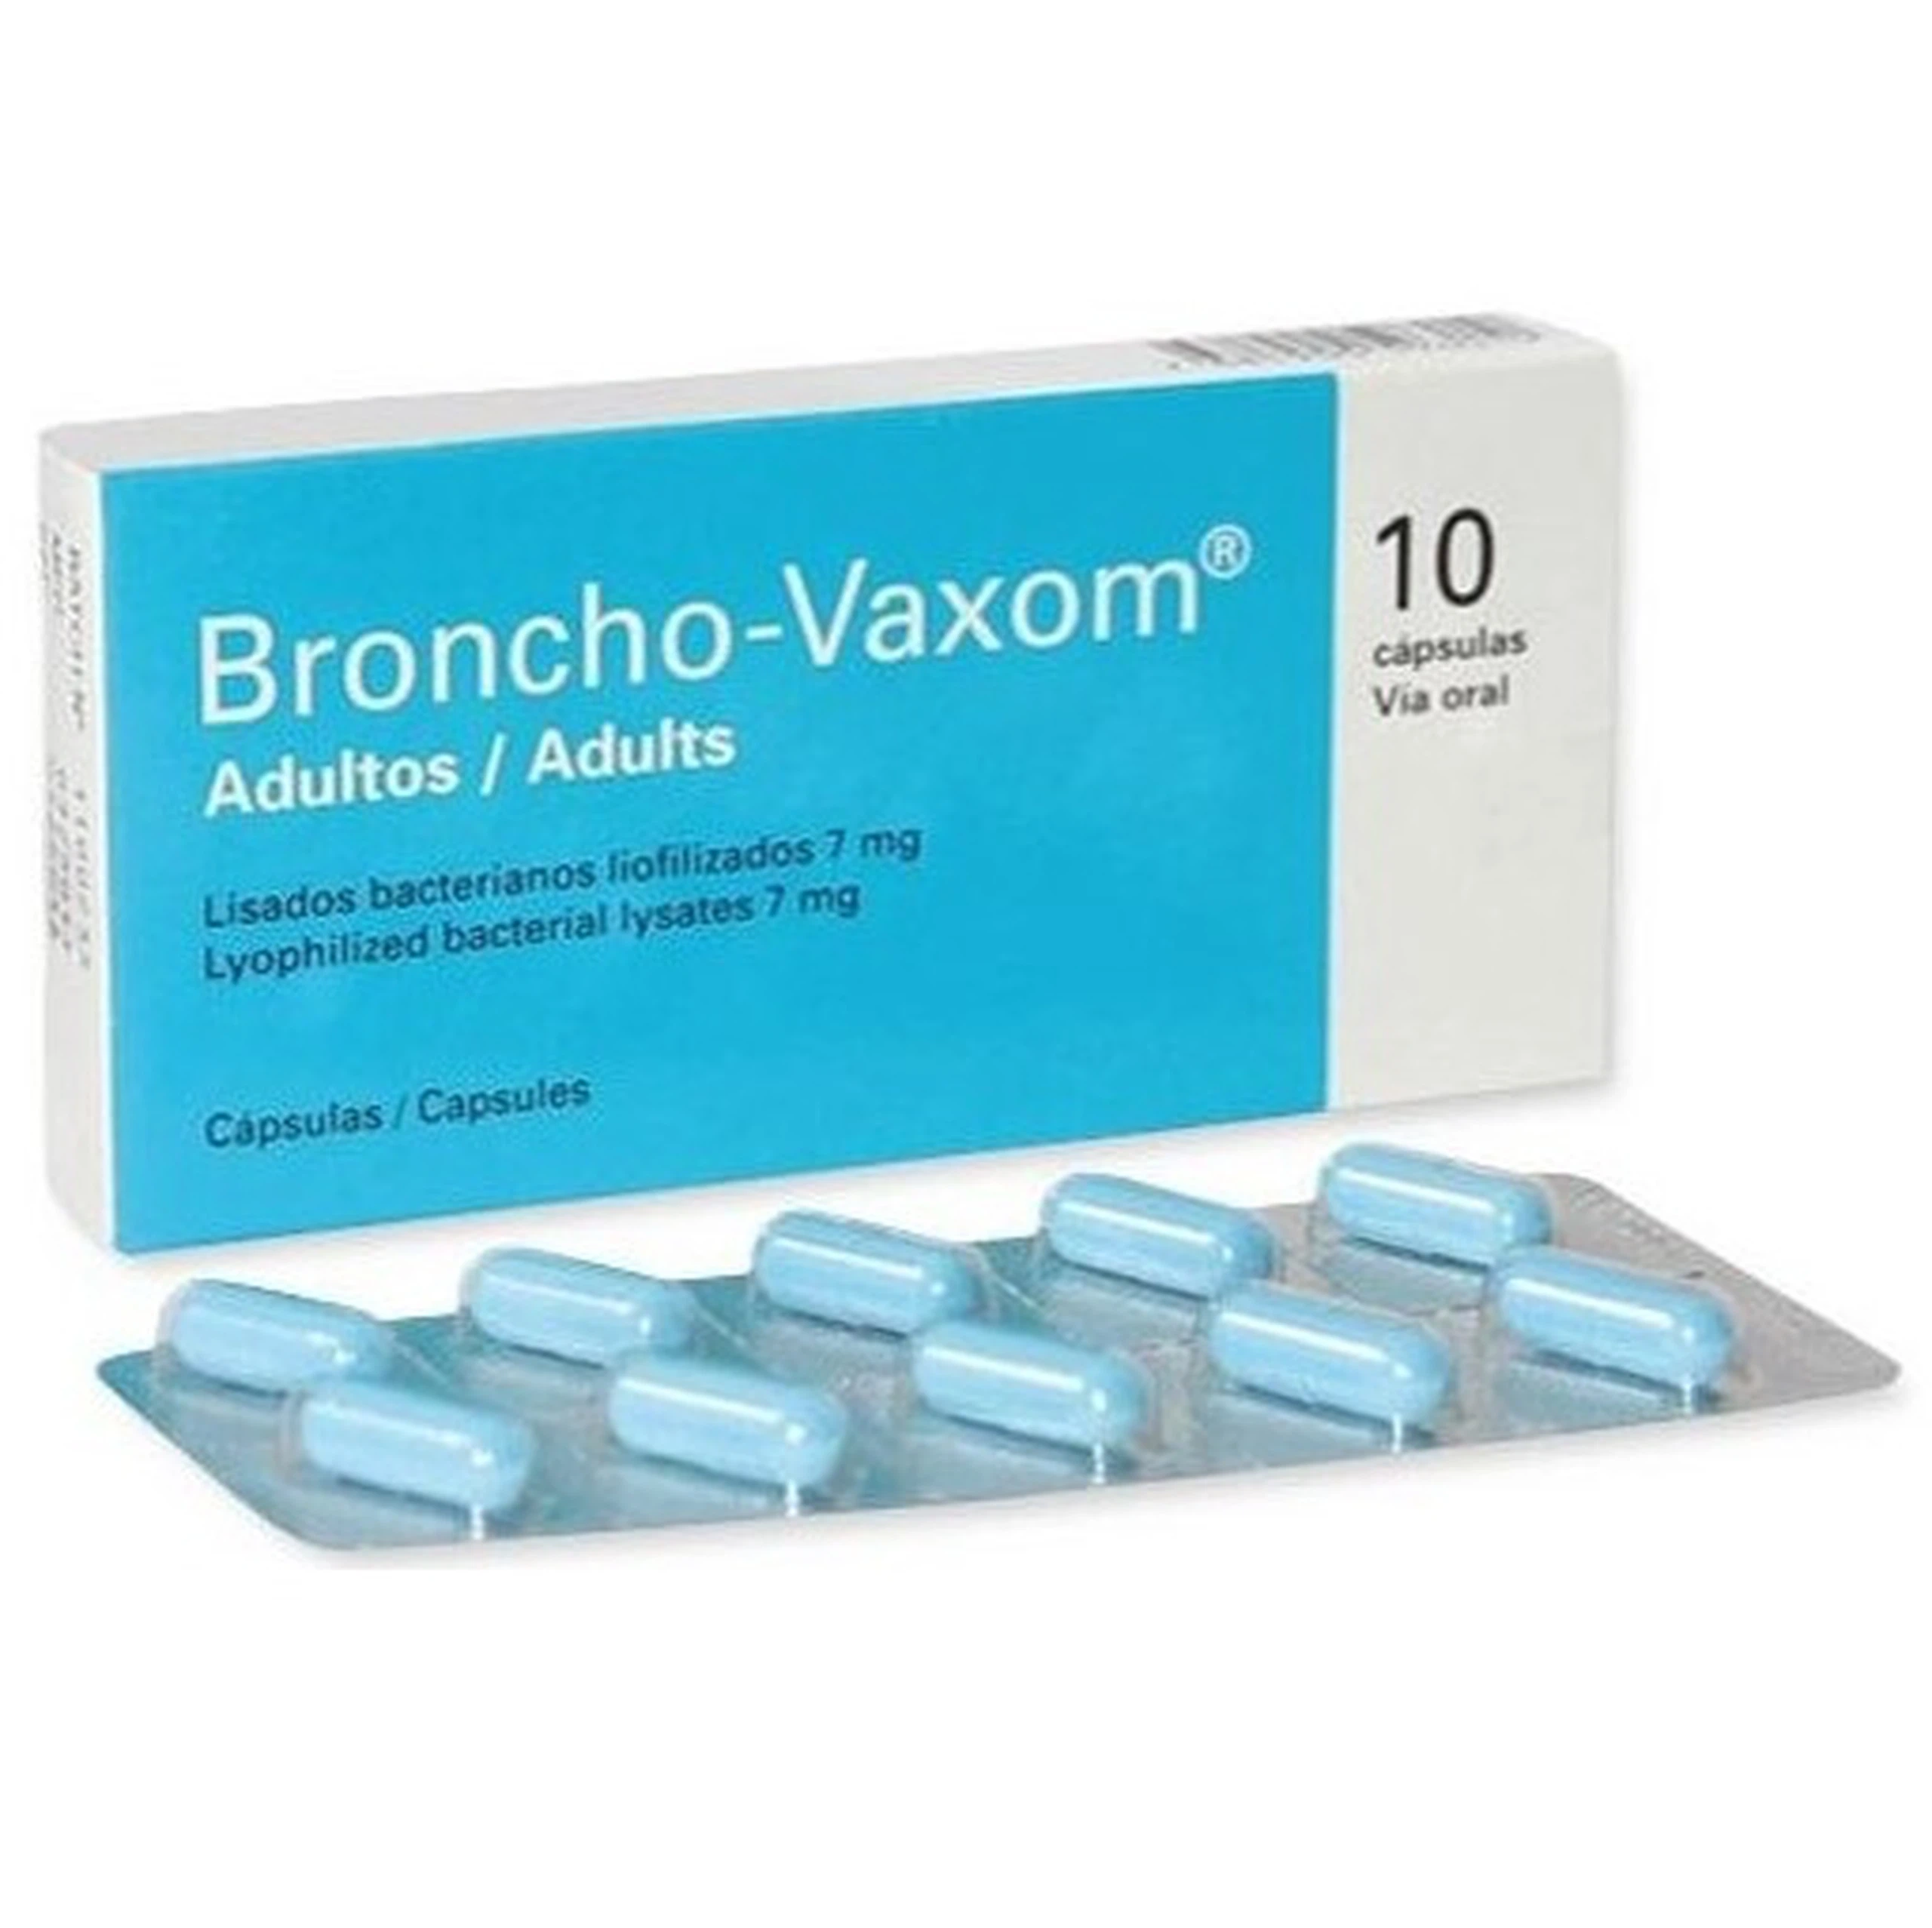 Thuốc Broncho-Vaxom điều trị nhiễm khuẩn đường hô hấp, tăng cường miễn dịch (10 viên)